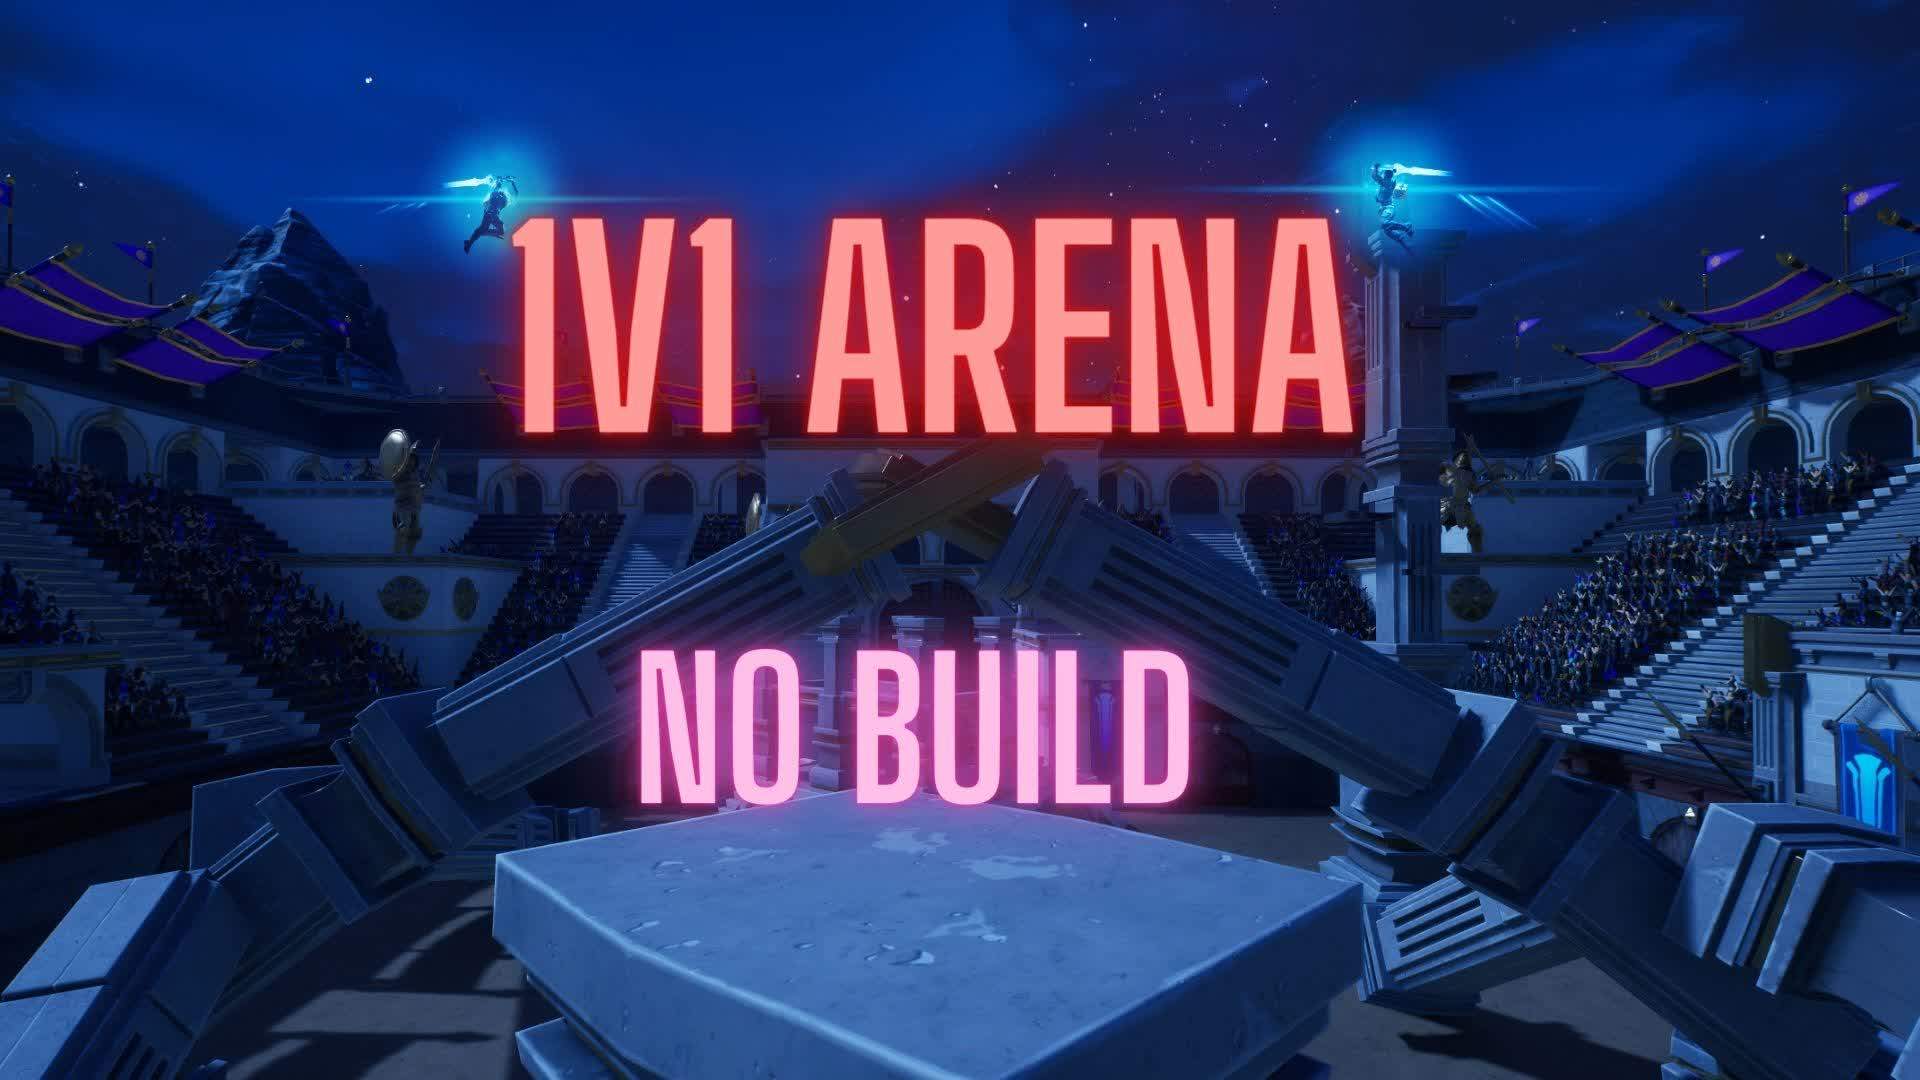 Hyper 1v1 Arena - No Build